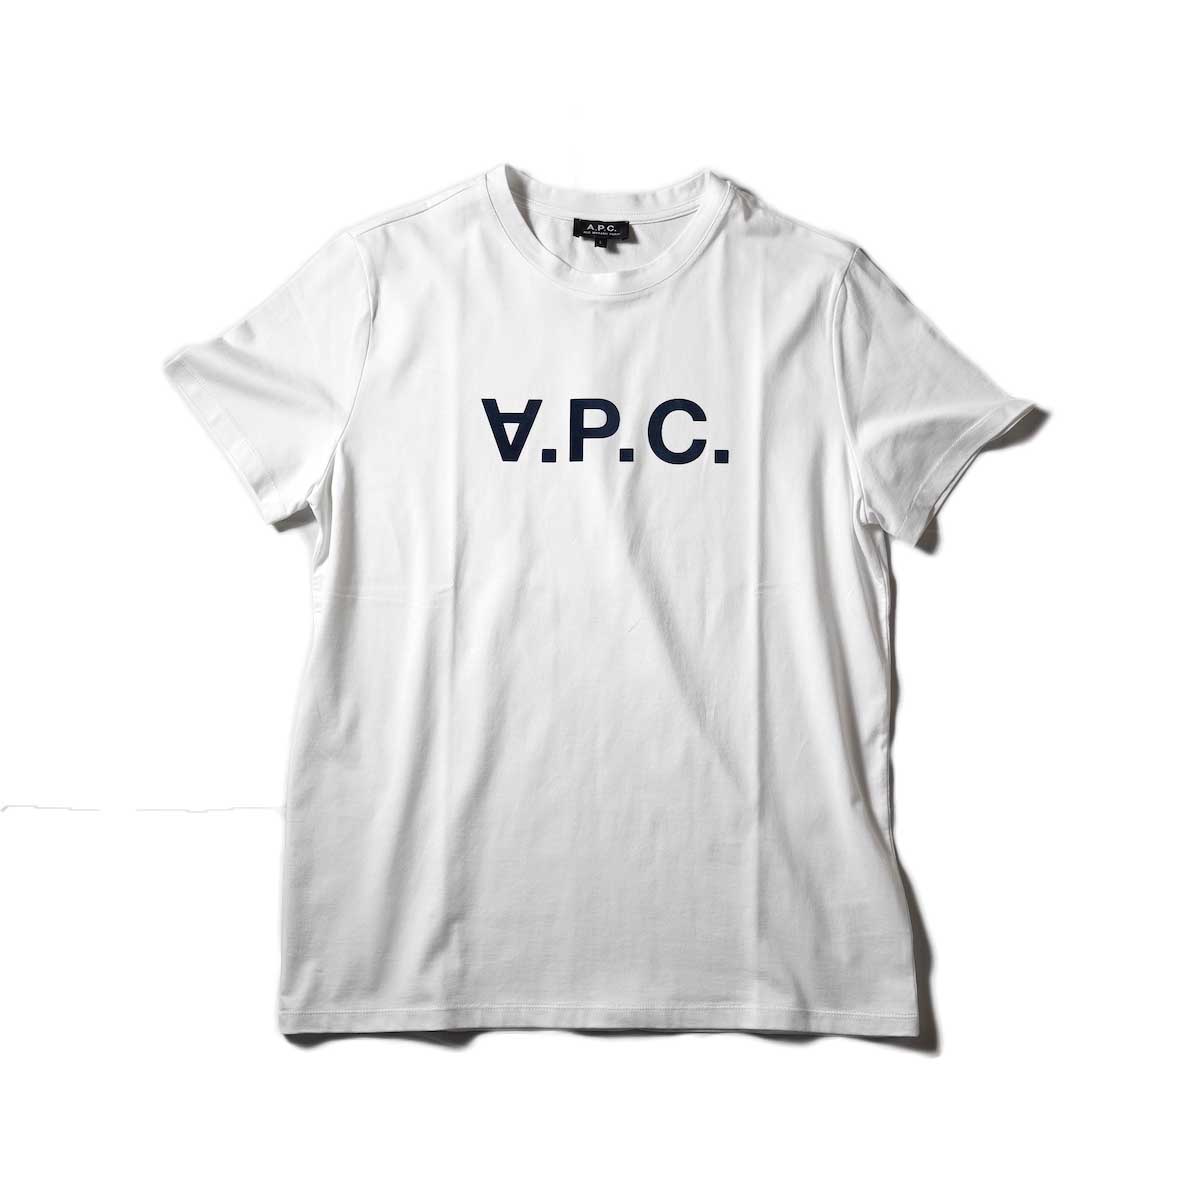 A.P.C. / VPC カラーTシャツ (White)正面